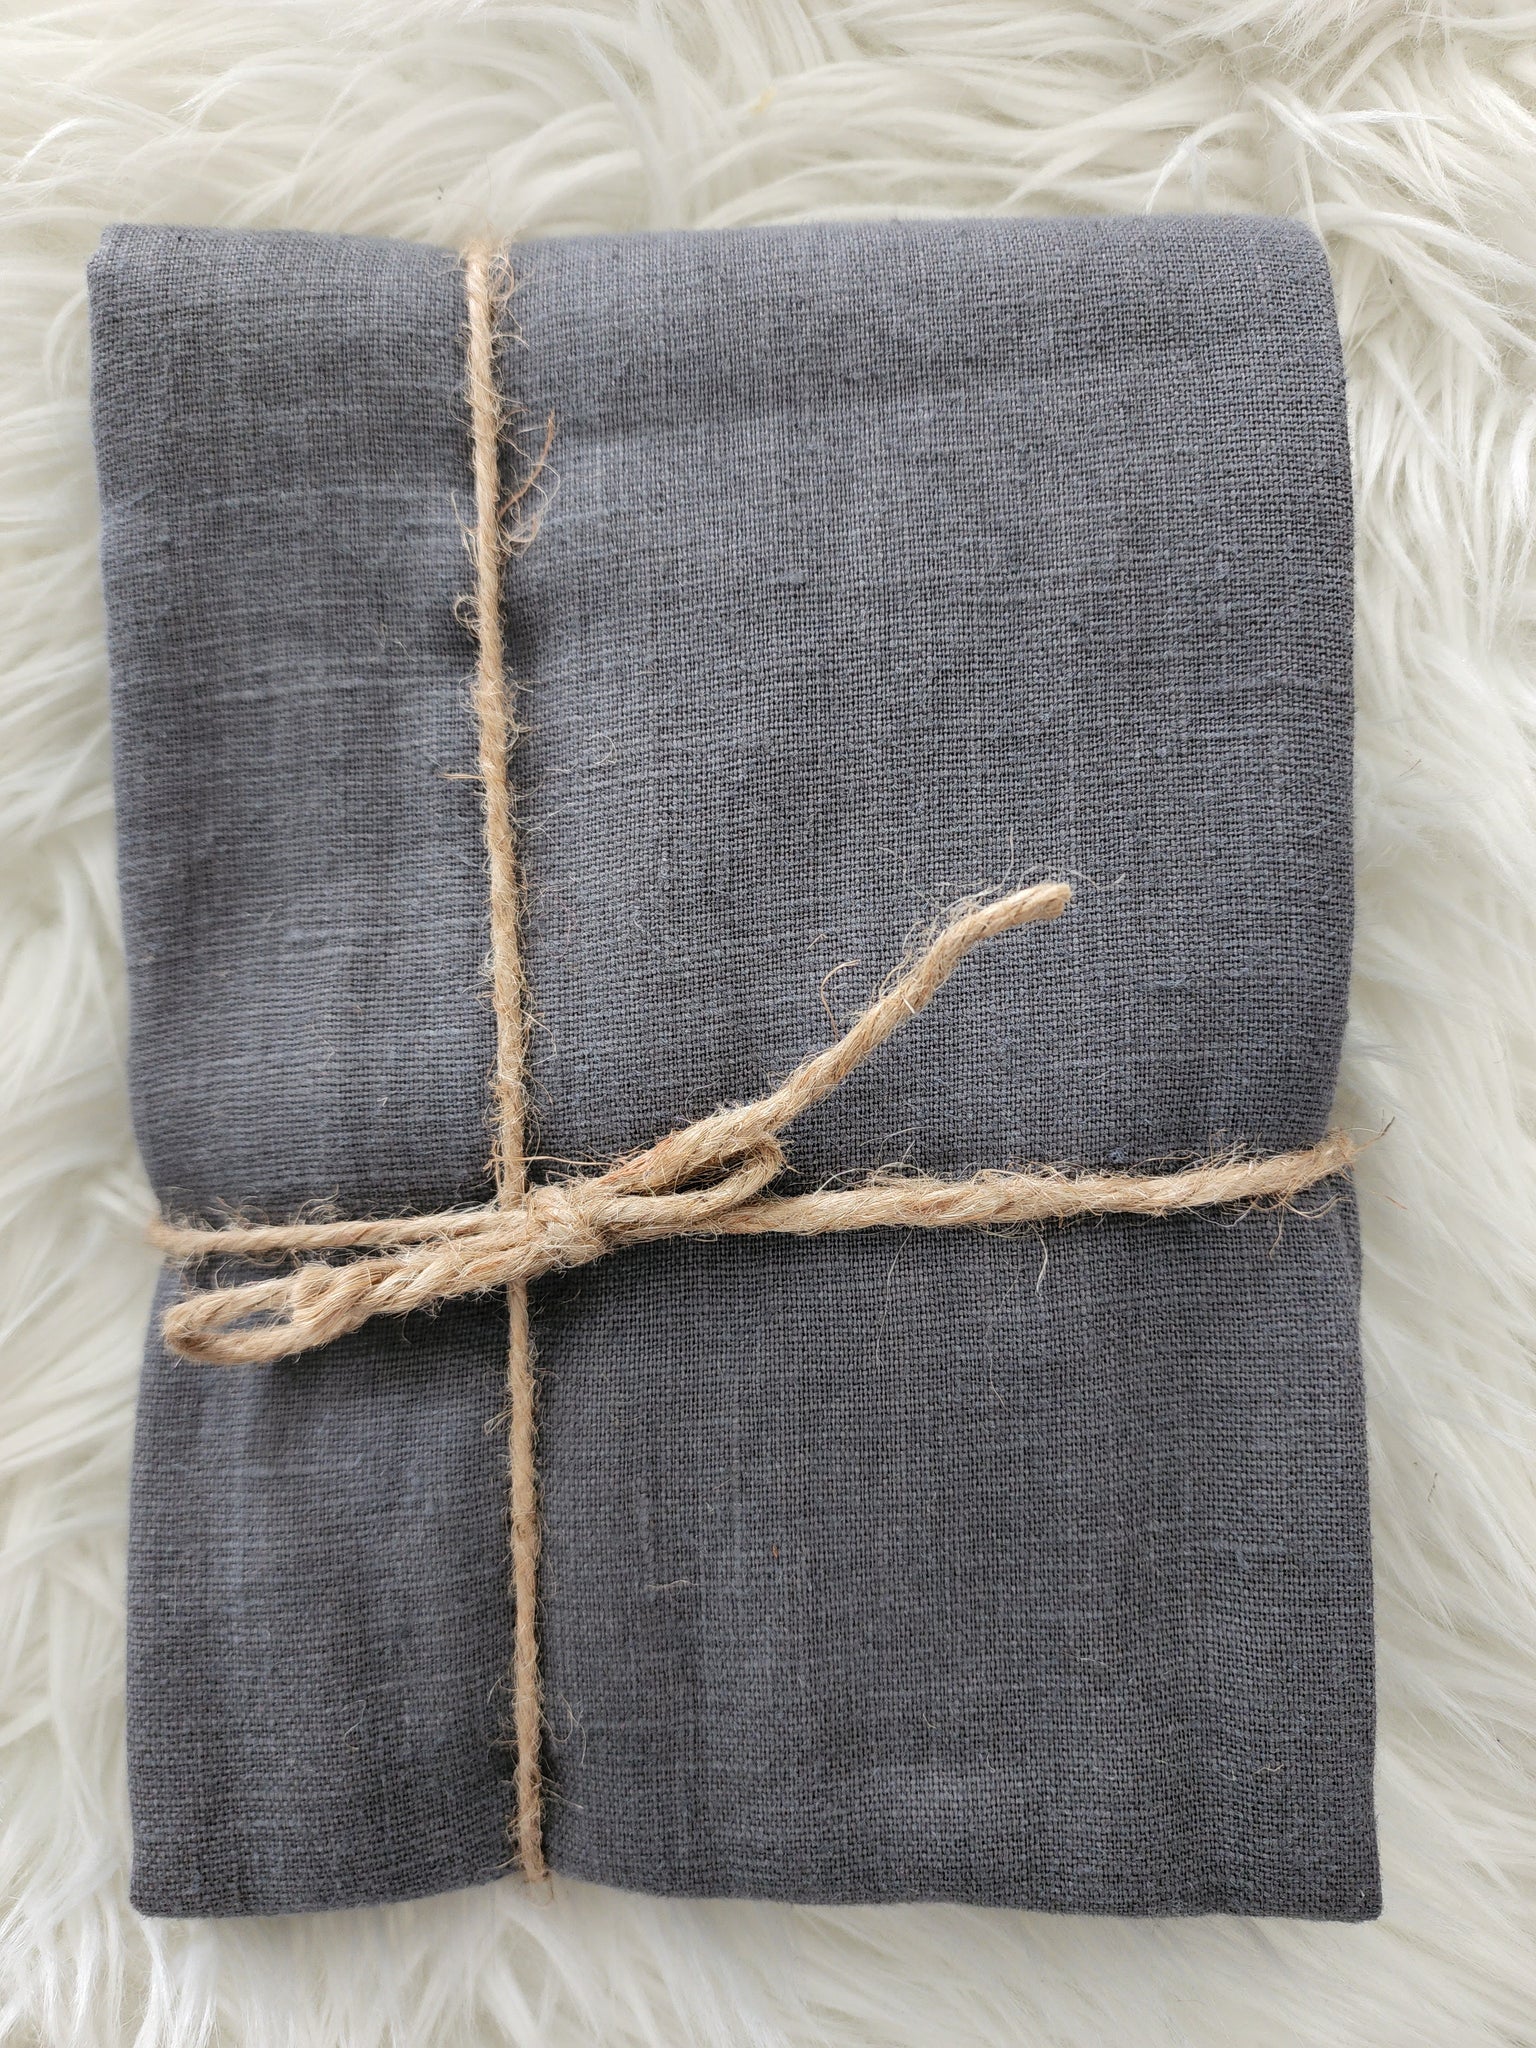 COALBANKS - Linen Weave Wrap